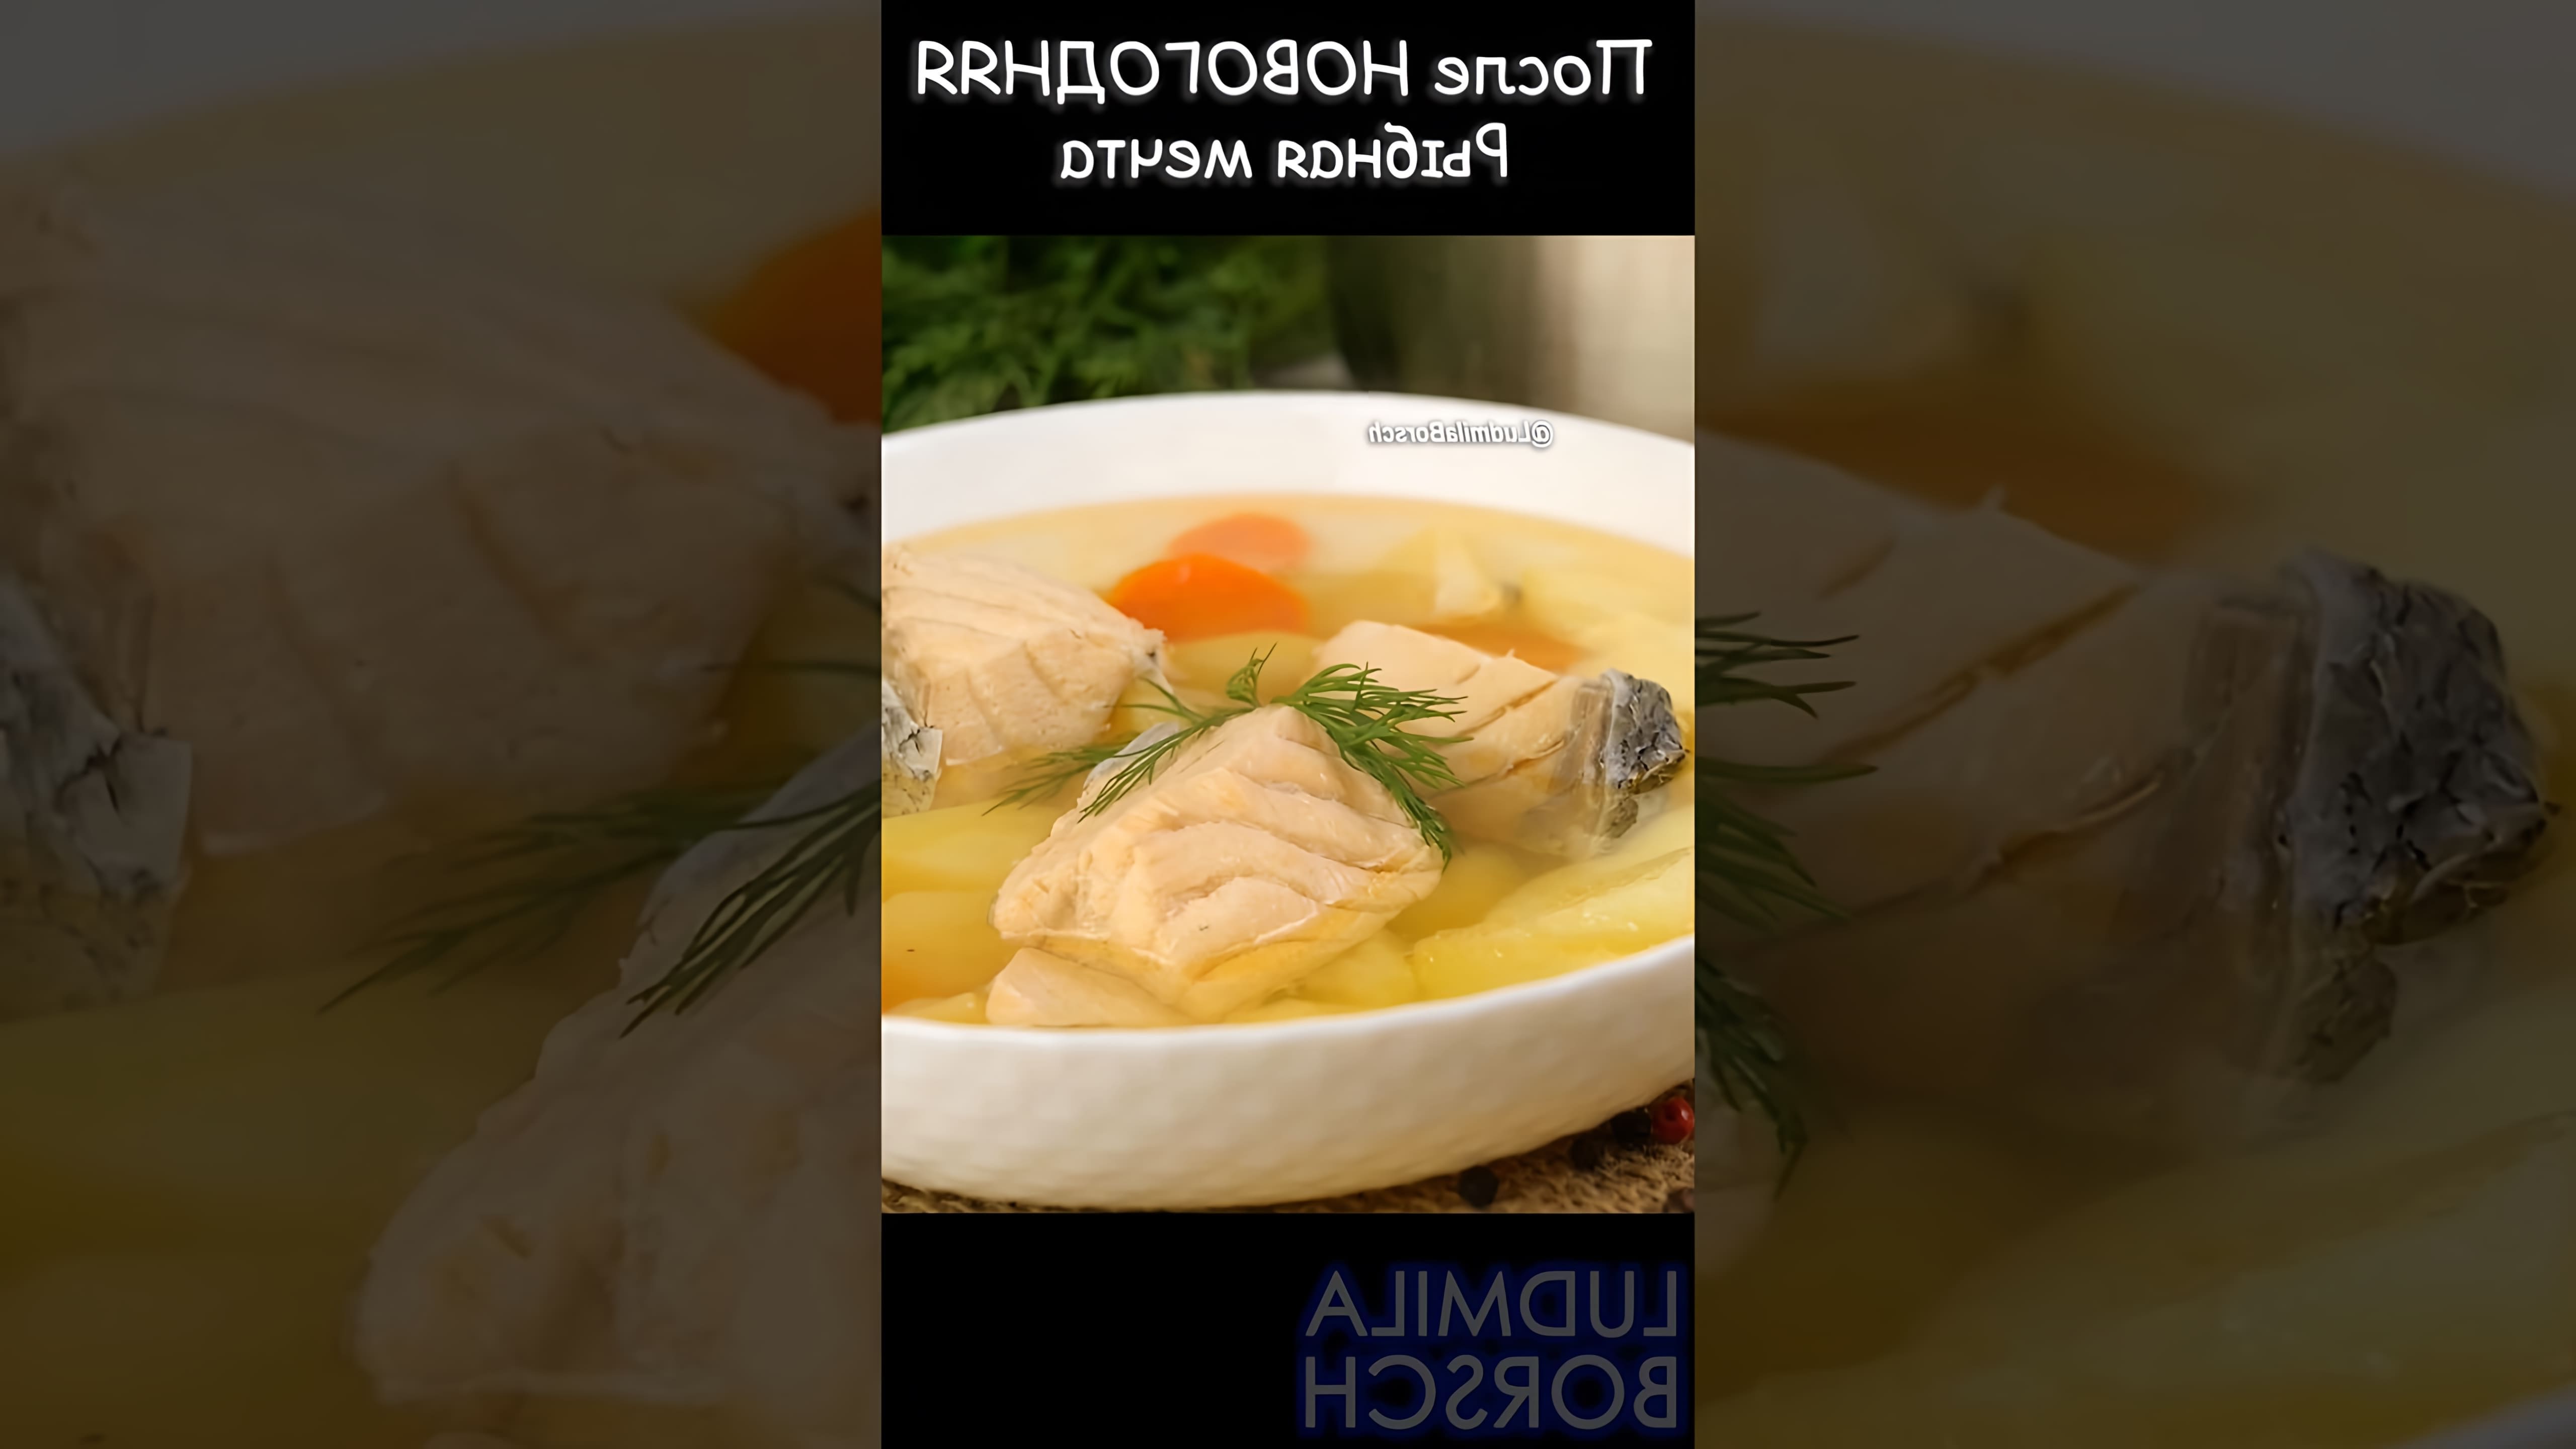 В этом видео демонстрируется рецепт быстрого рыбного супа, который идеально подходит для восстановления после новогодних праздников